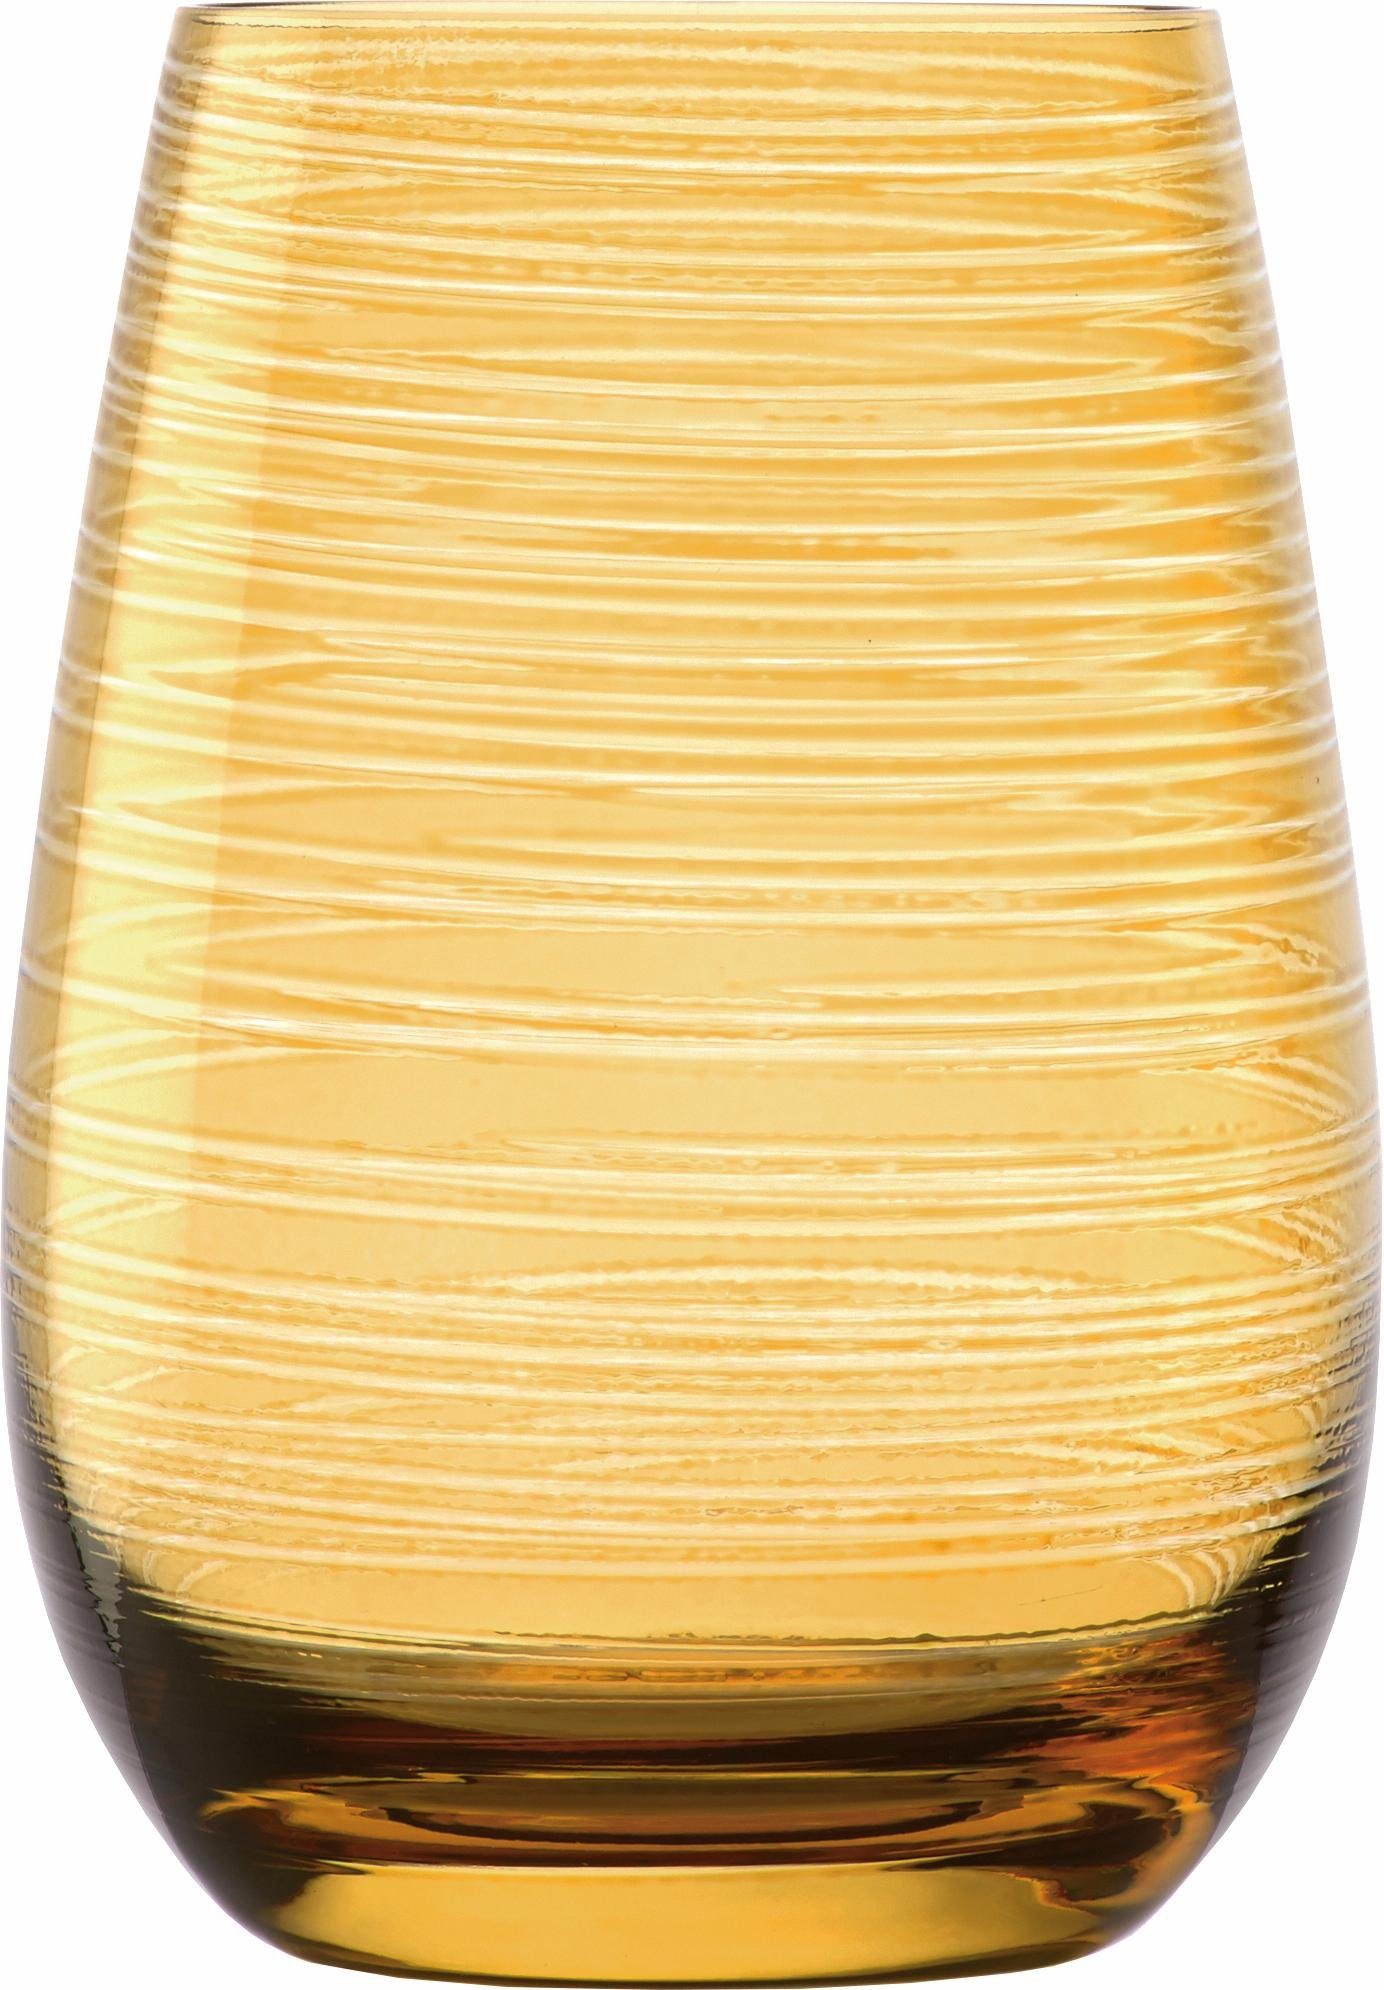 Becher Stölzle TWISTER, 6-teilig Glas, bernsteinfarben